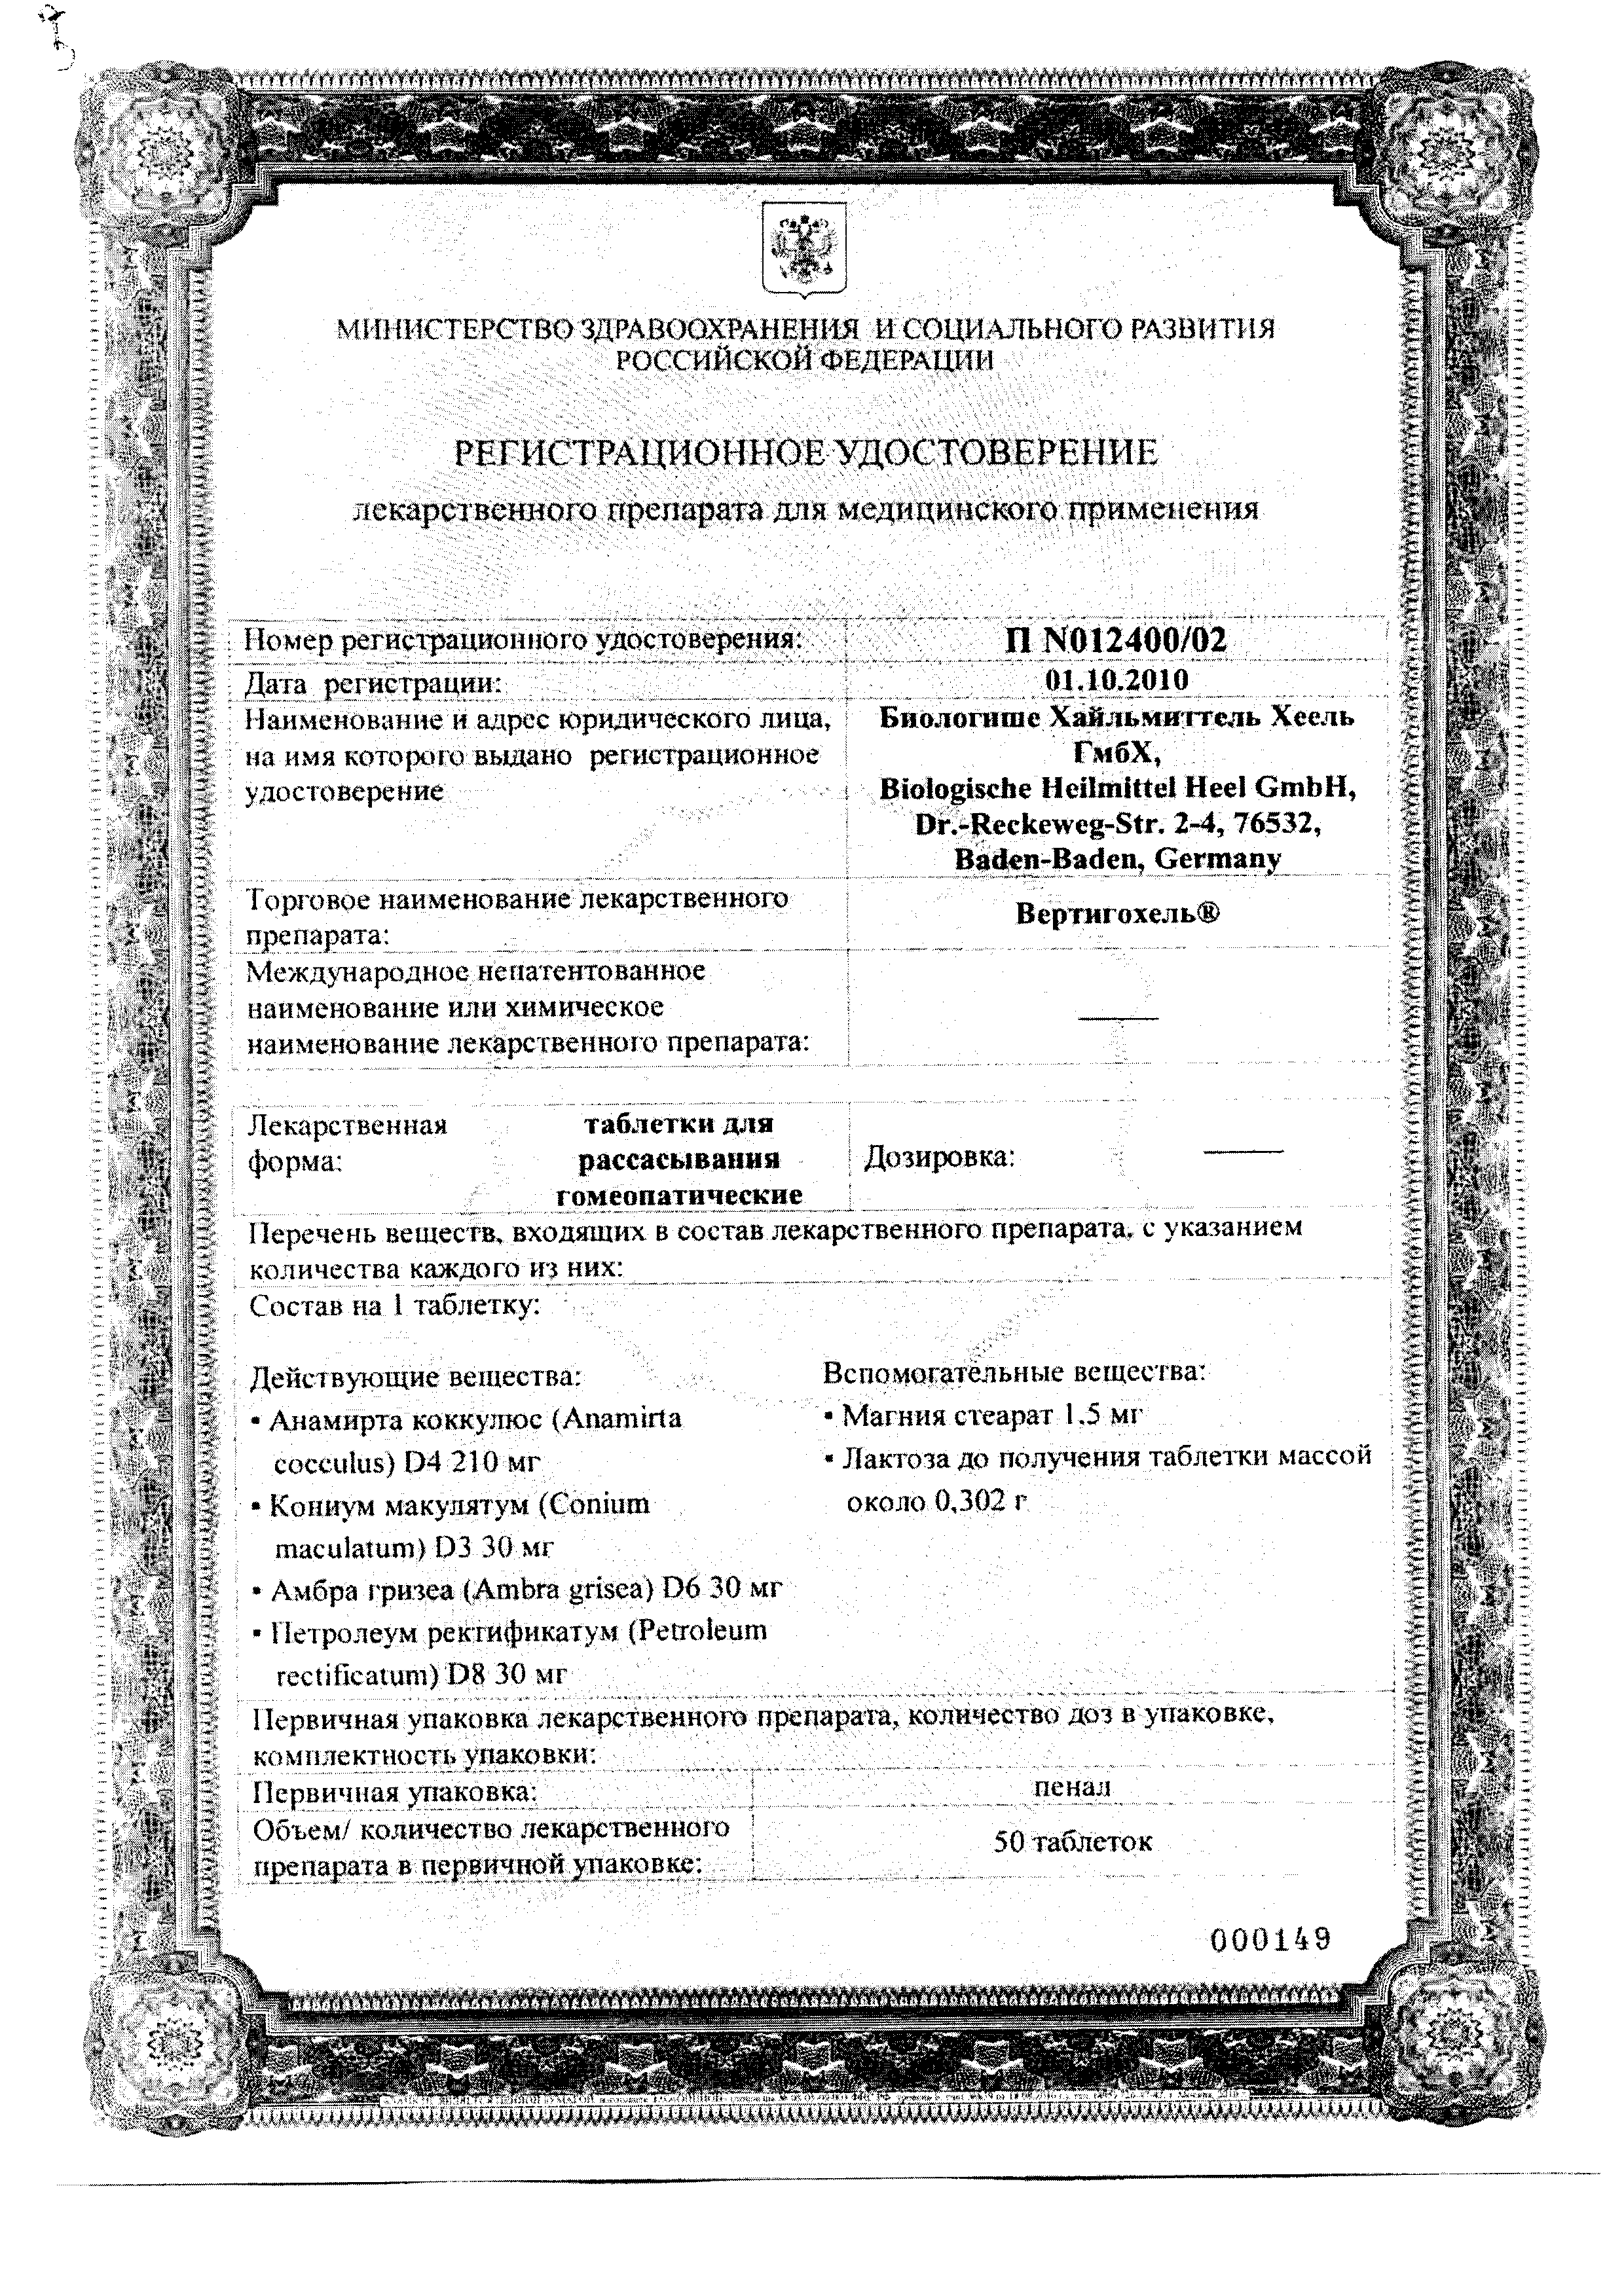 Вертигохель сертификат